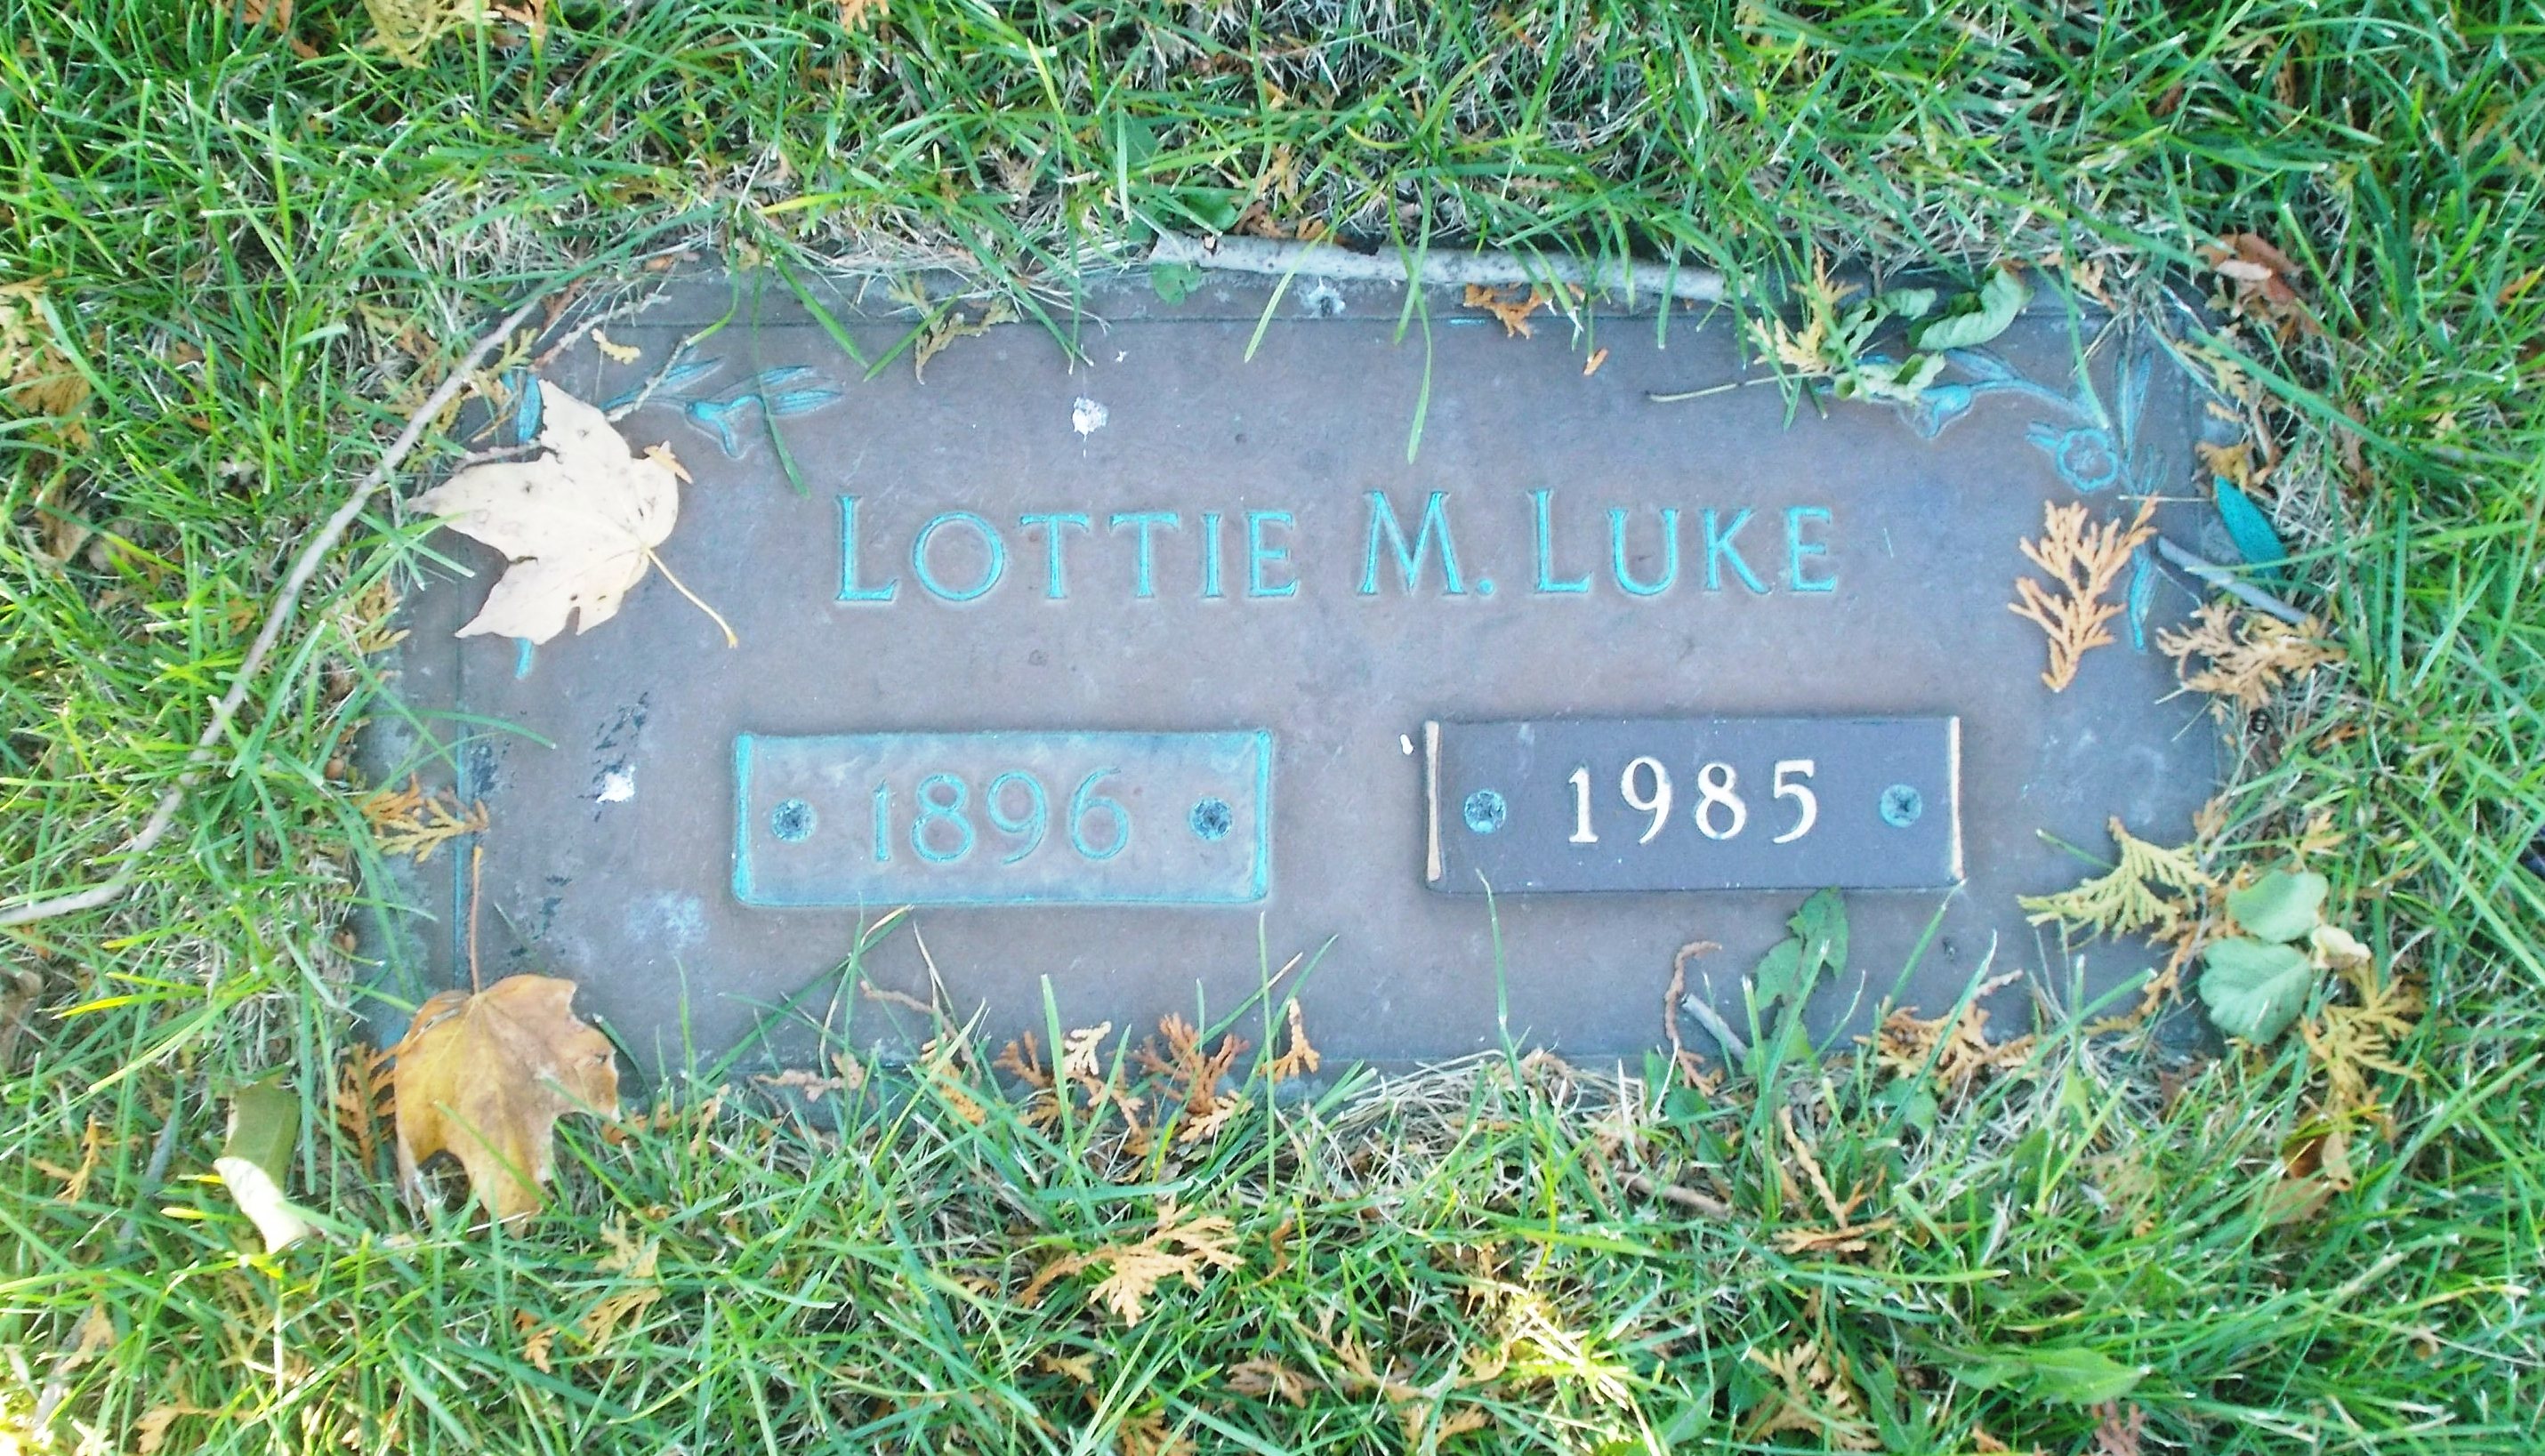 Lottie M Luke